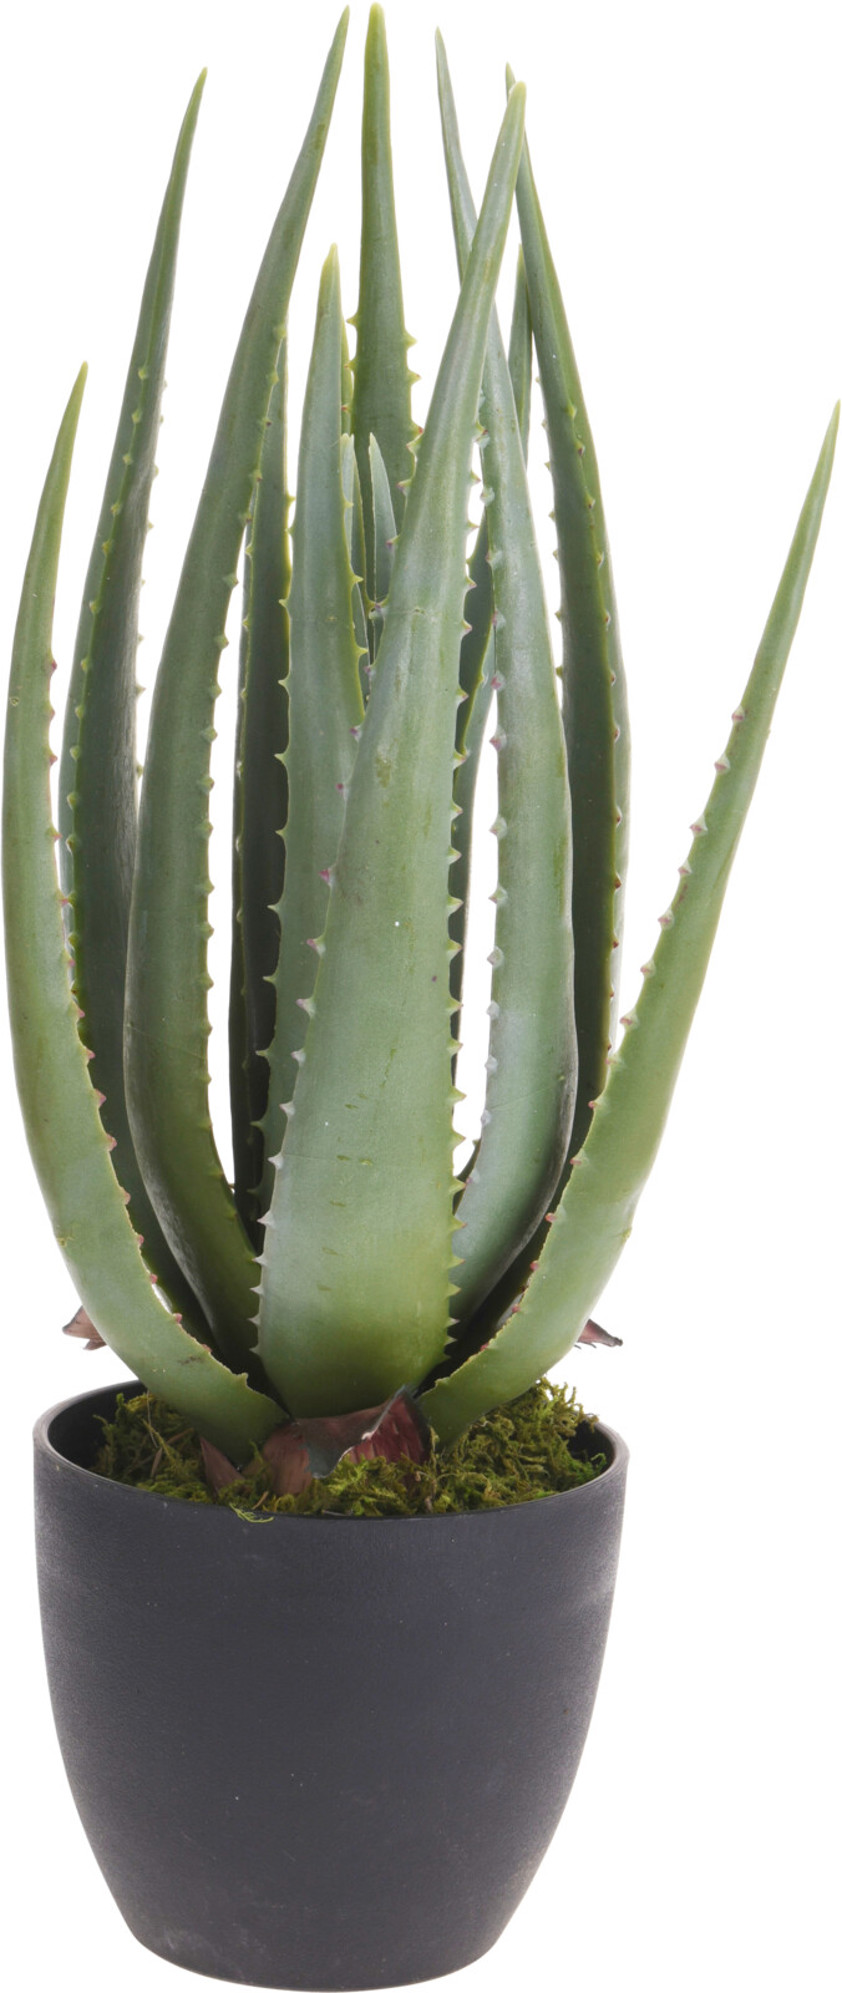 Faux Aloe Vera Plant in A Black Pot